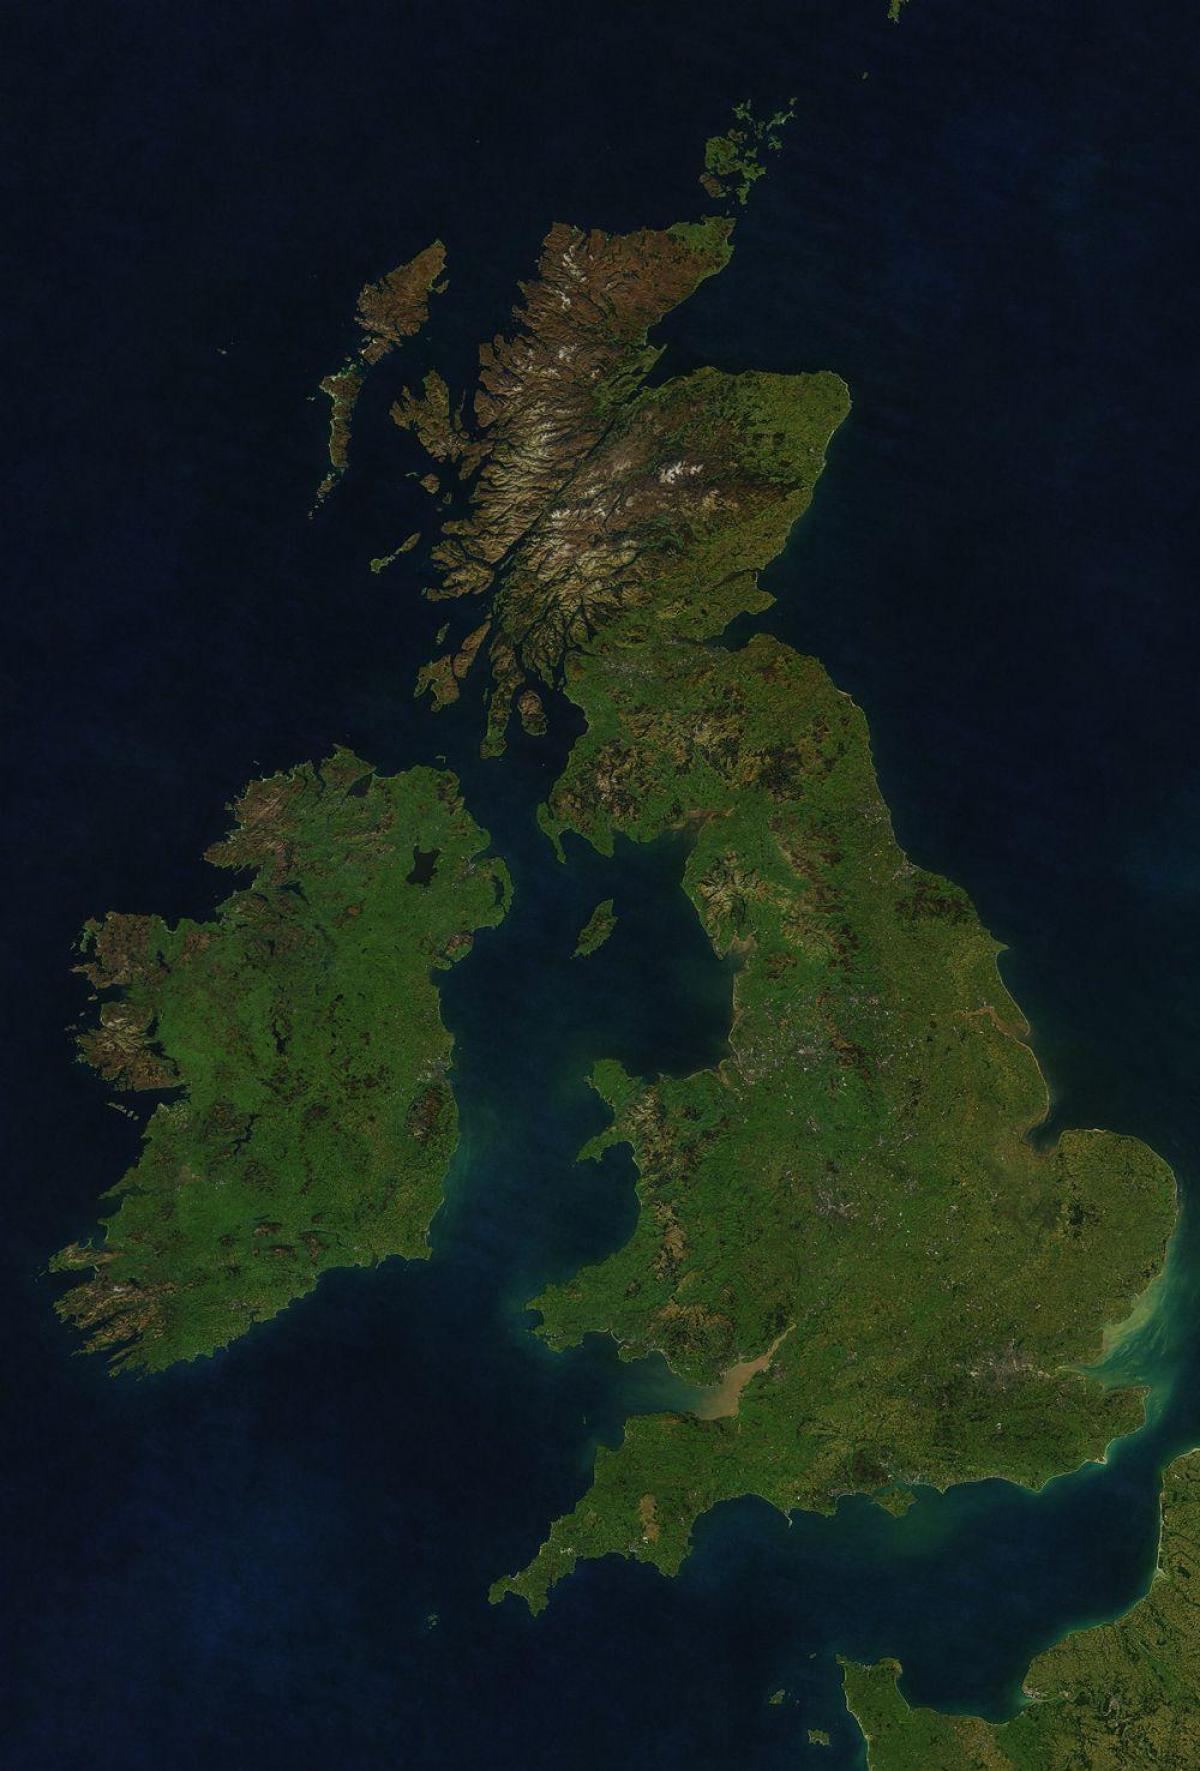 Verenigd Koninkrijk (UK) sky view kaart